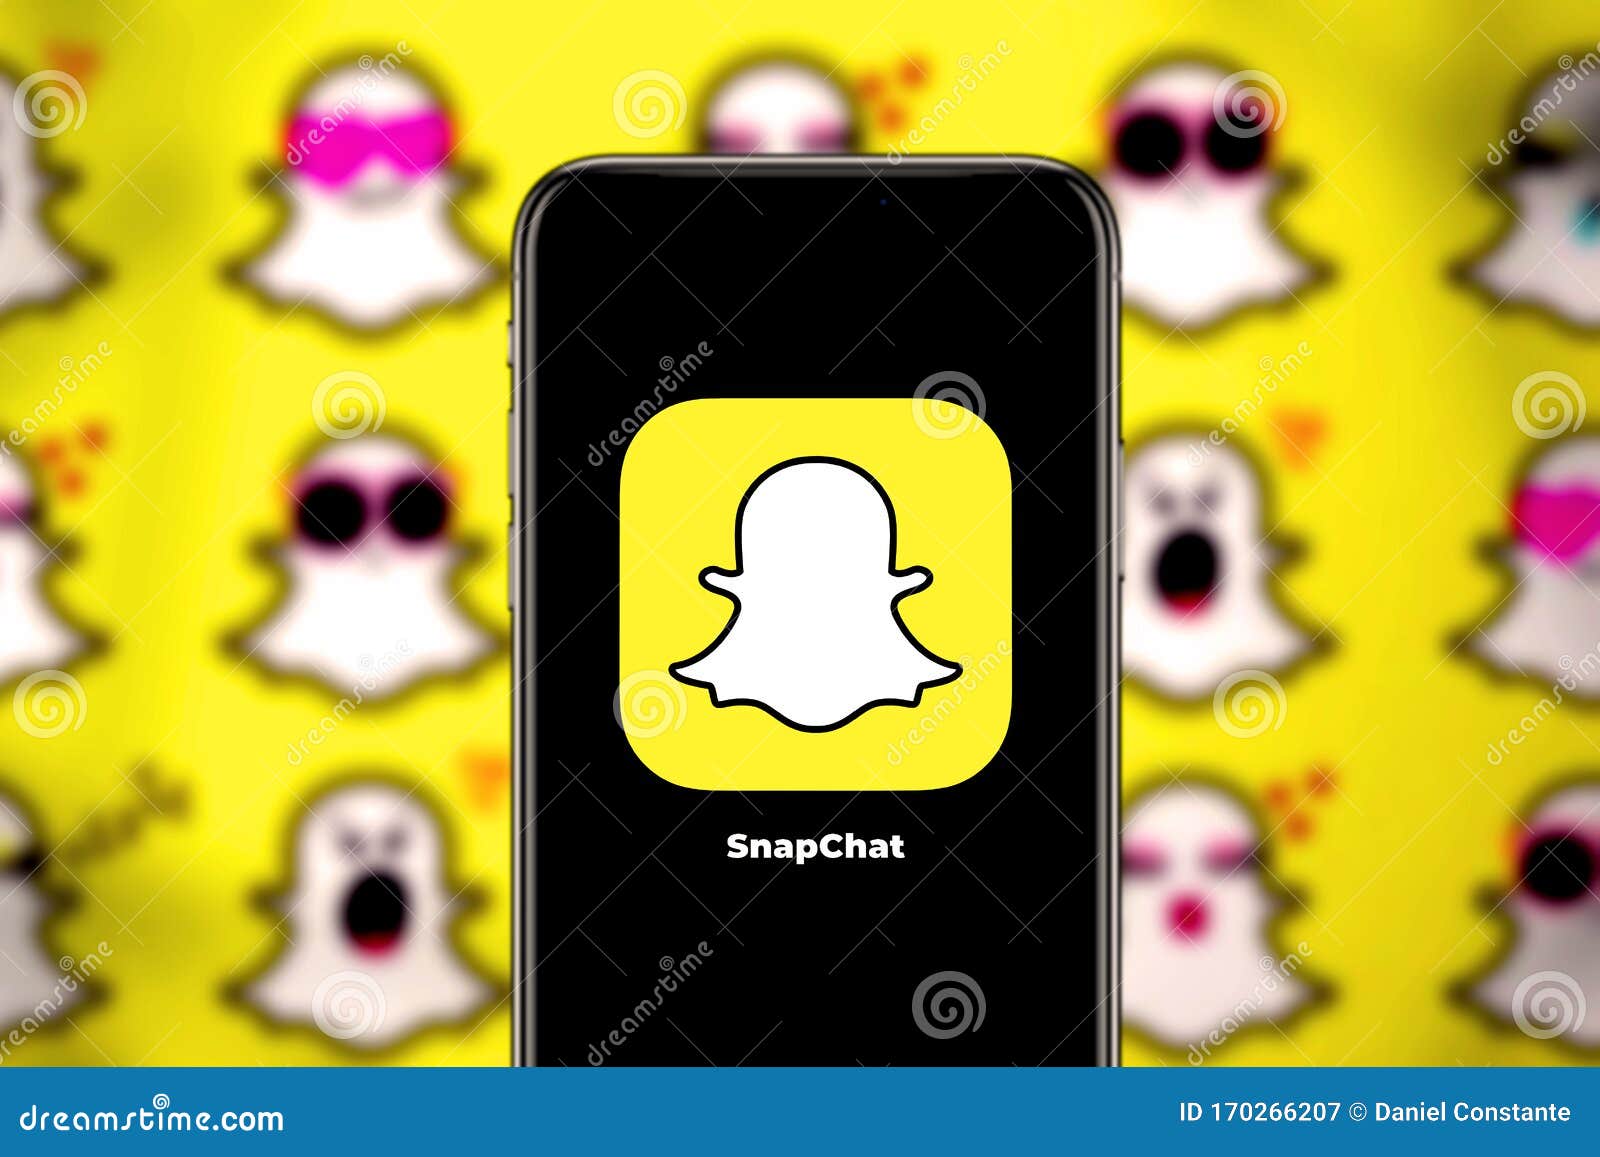 Teléfono Inteligente Con El Logotipo De Snapchat, Que Es Una Aplicación De  Mensajería Para Smartphones Fotografía editorial - Imagen de imagen, icono:  170266207